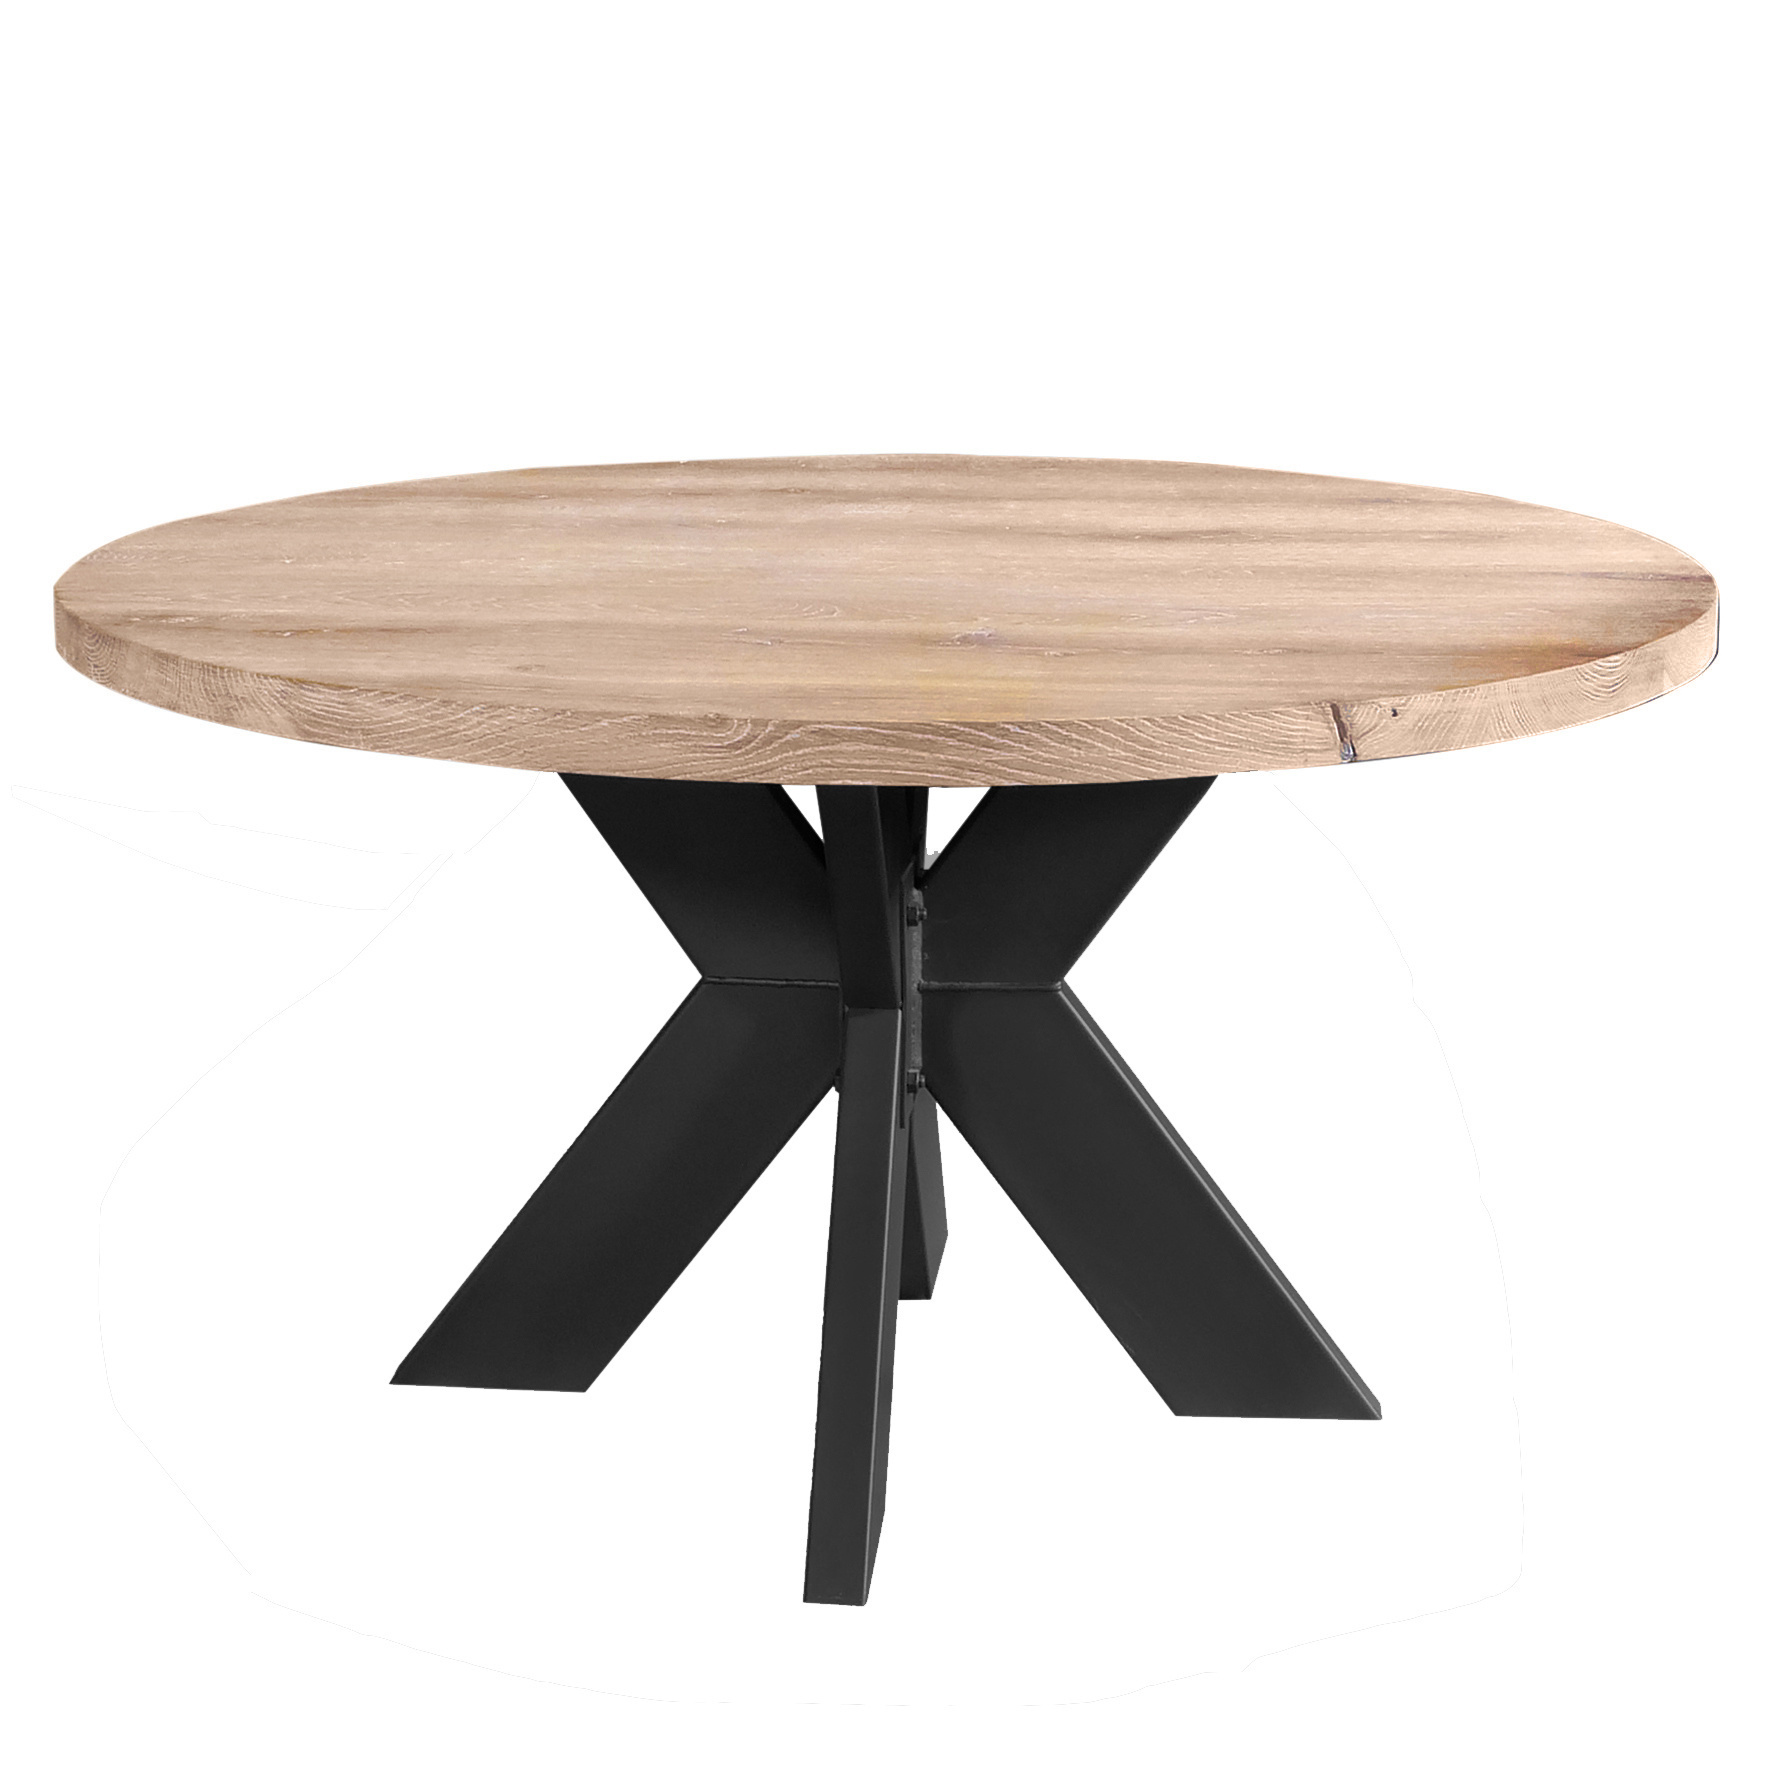  Tischplatte Eiche rund nach Maß - 2,7 cm dick (1-Schicht) - Breite Lamellen (10 - 12 cm breit) - Eichenholz A-Qualität - verleimt & künstlich getrocknet (HF 8-12%) - Durchmesser: 50 - 117 cm